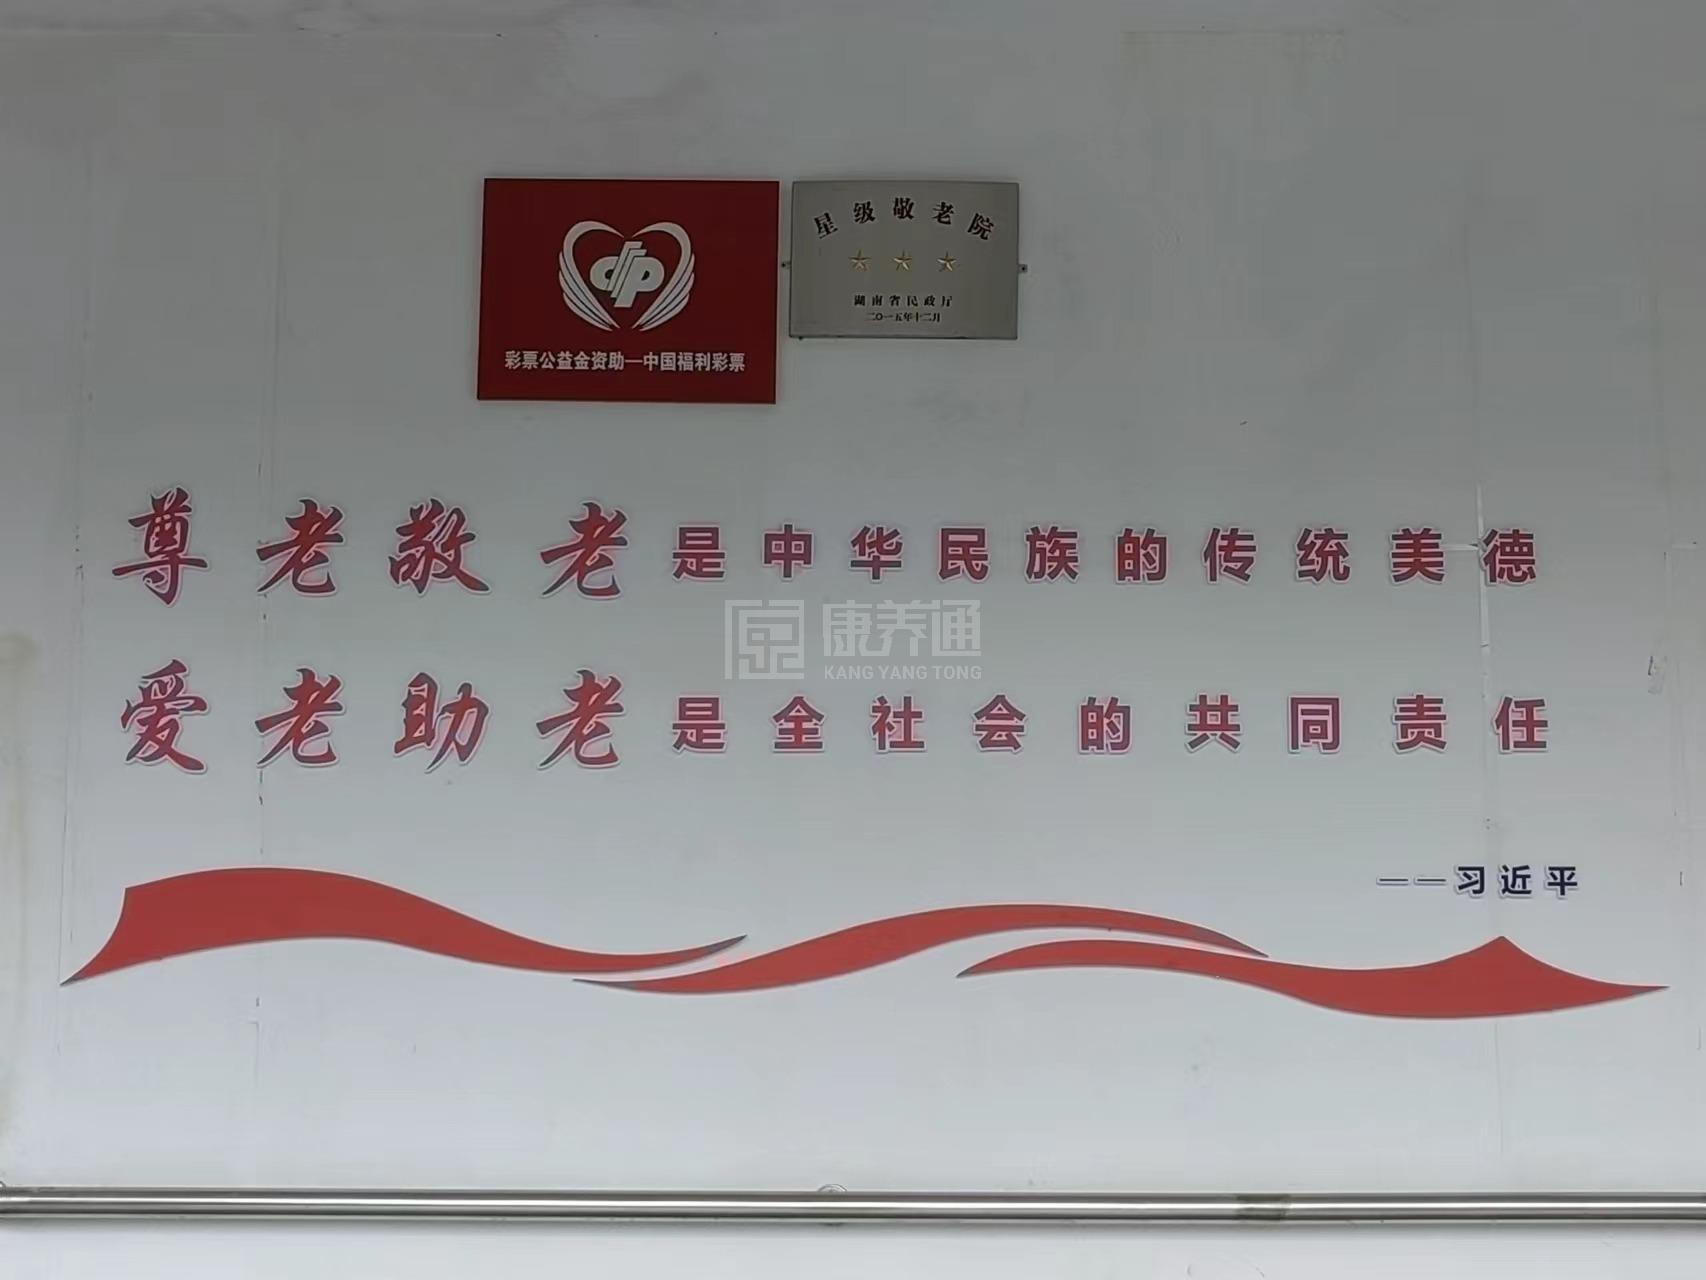 平江县瓮江镇敬老院服务项目图1健康安全、营养均衡、味美可口